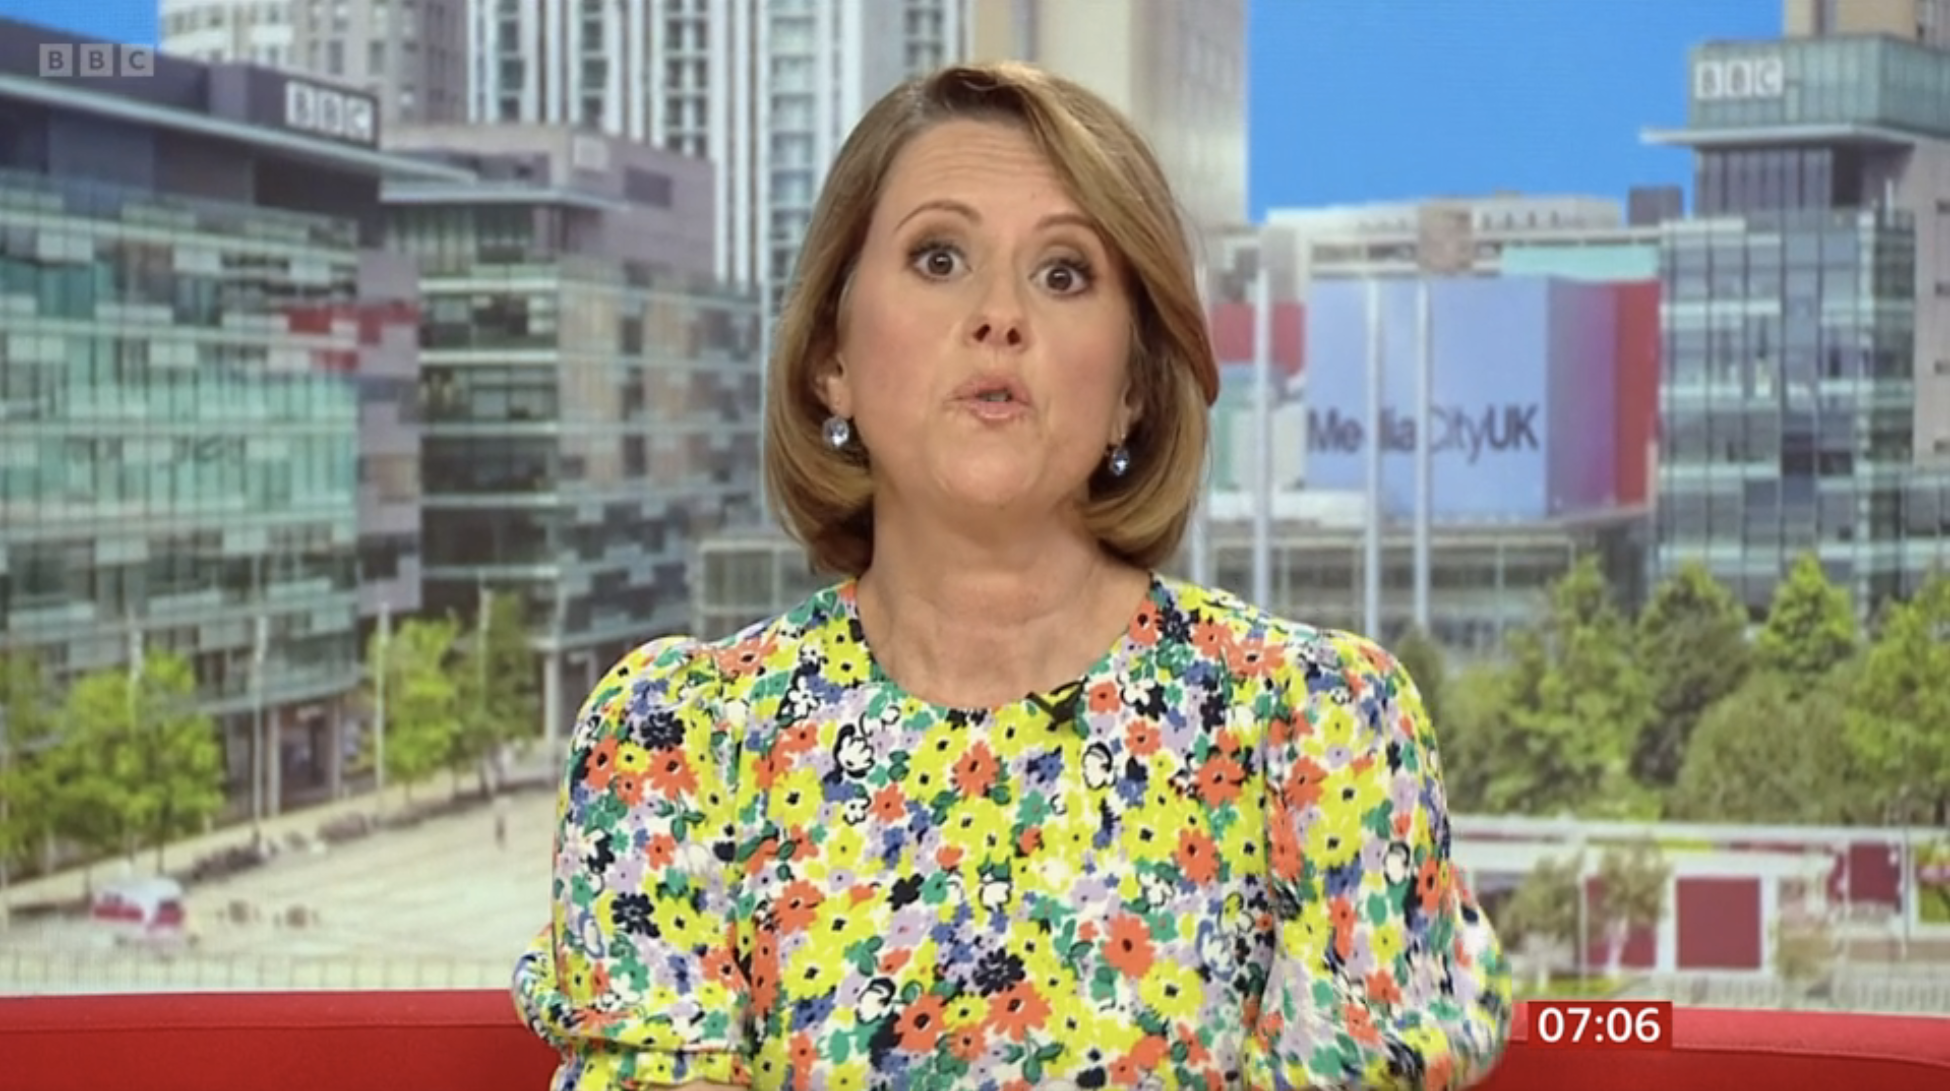 BBC Royal-Korrespondentin Sarah Campbell sah mit ihrer Bob-Frisur und dem Kleid mit Blumendruck strahlend aus